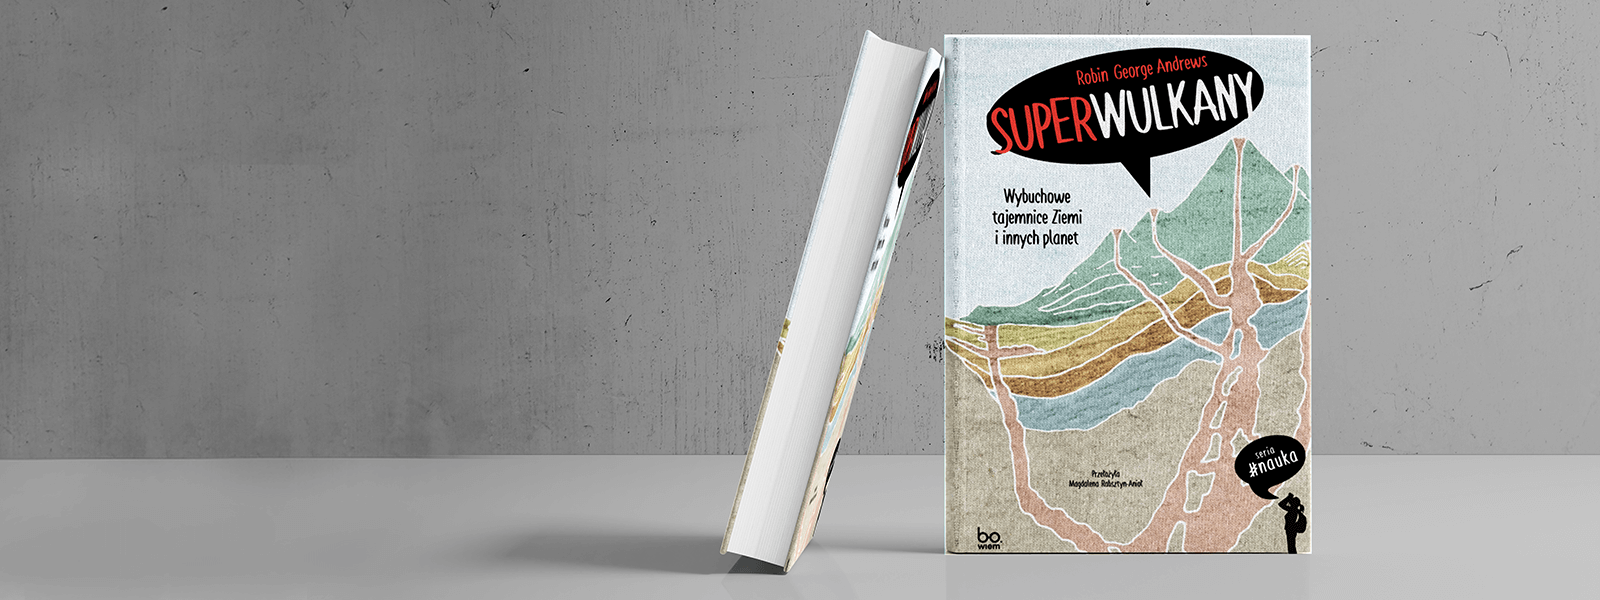 okładka książki Superwulkany na betonowym tle